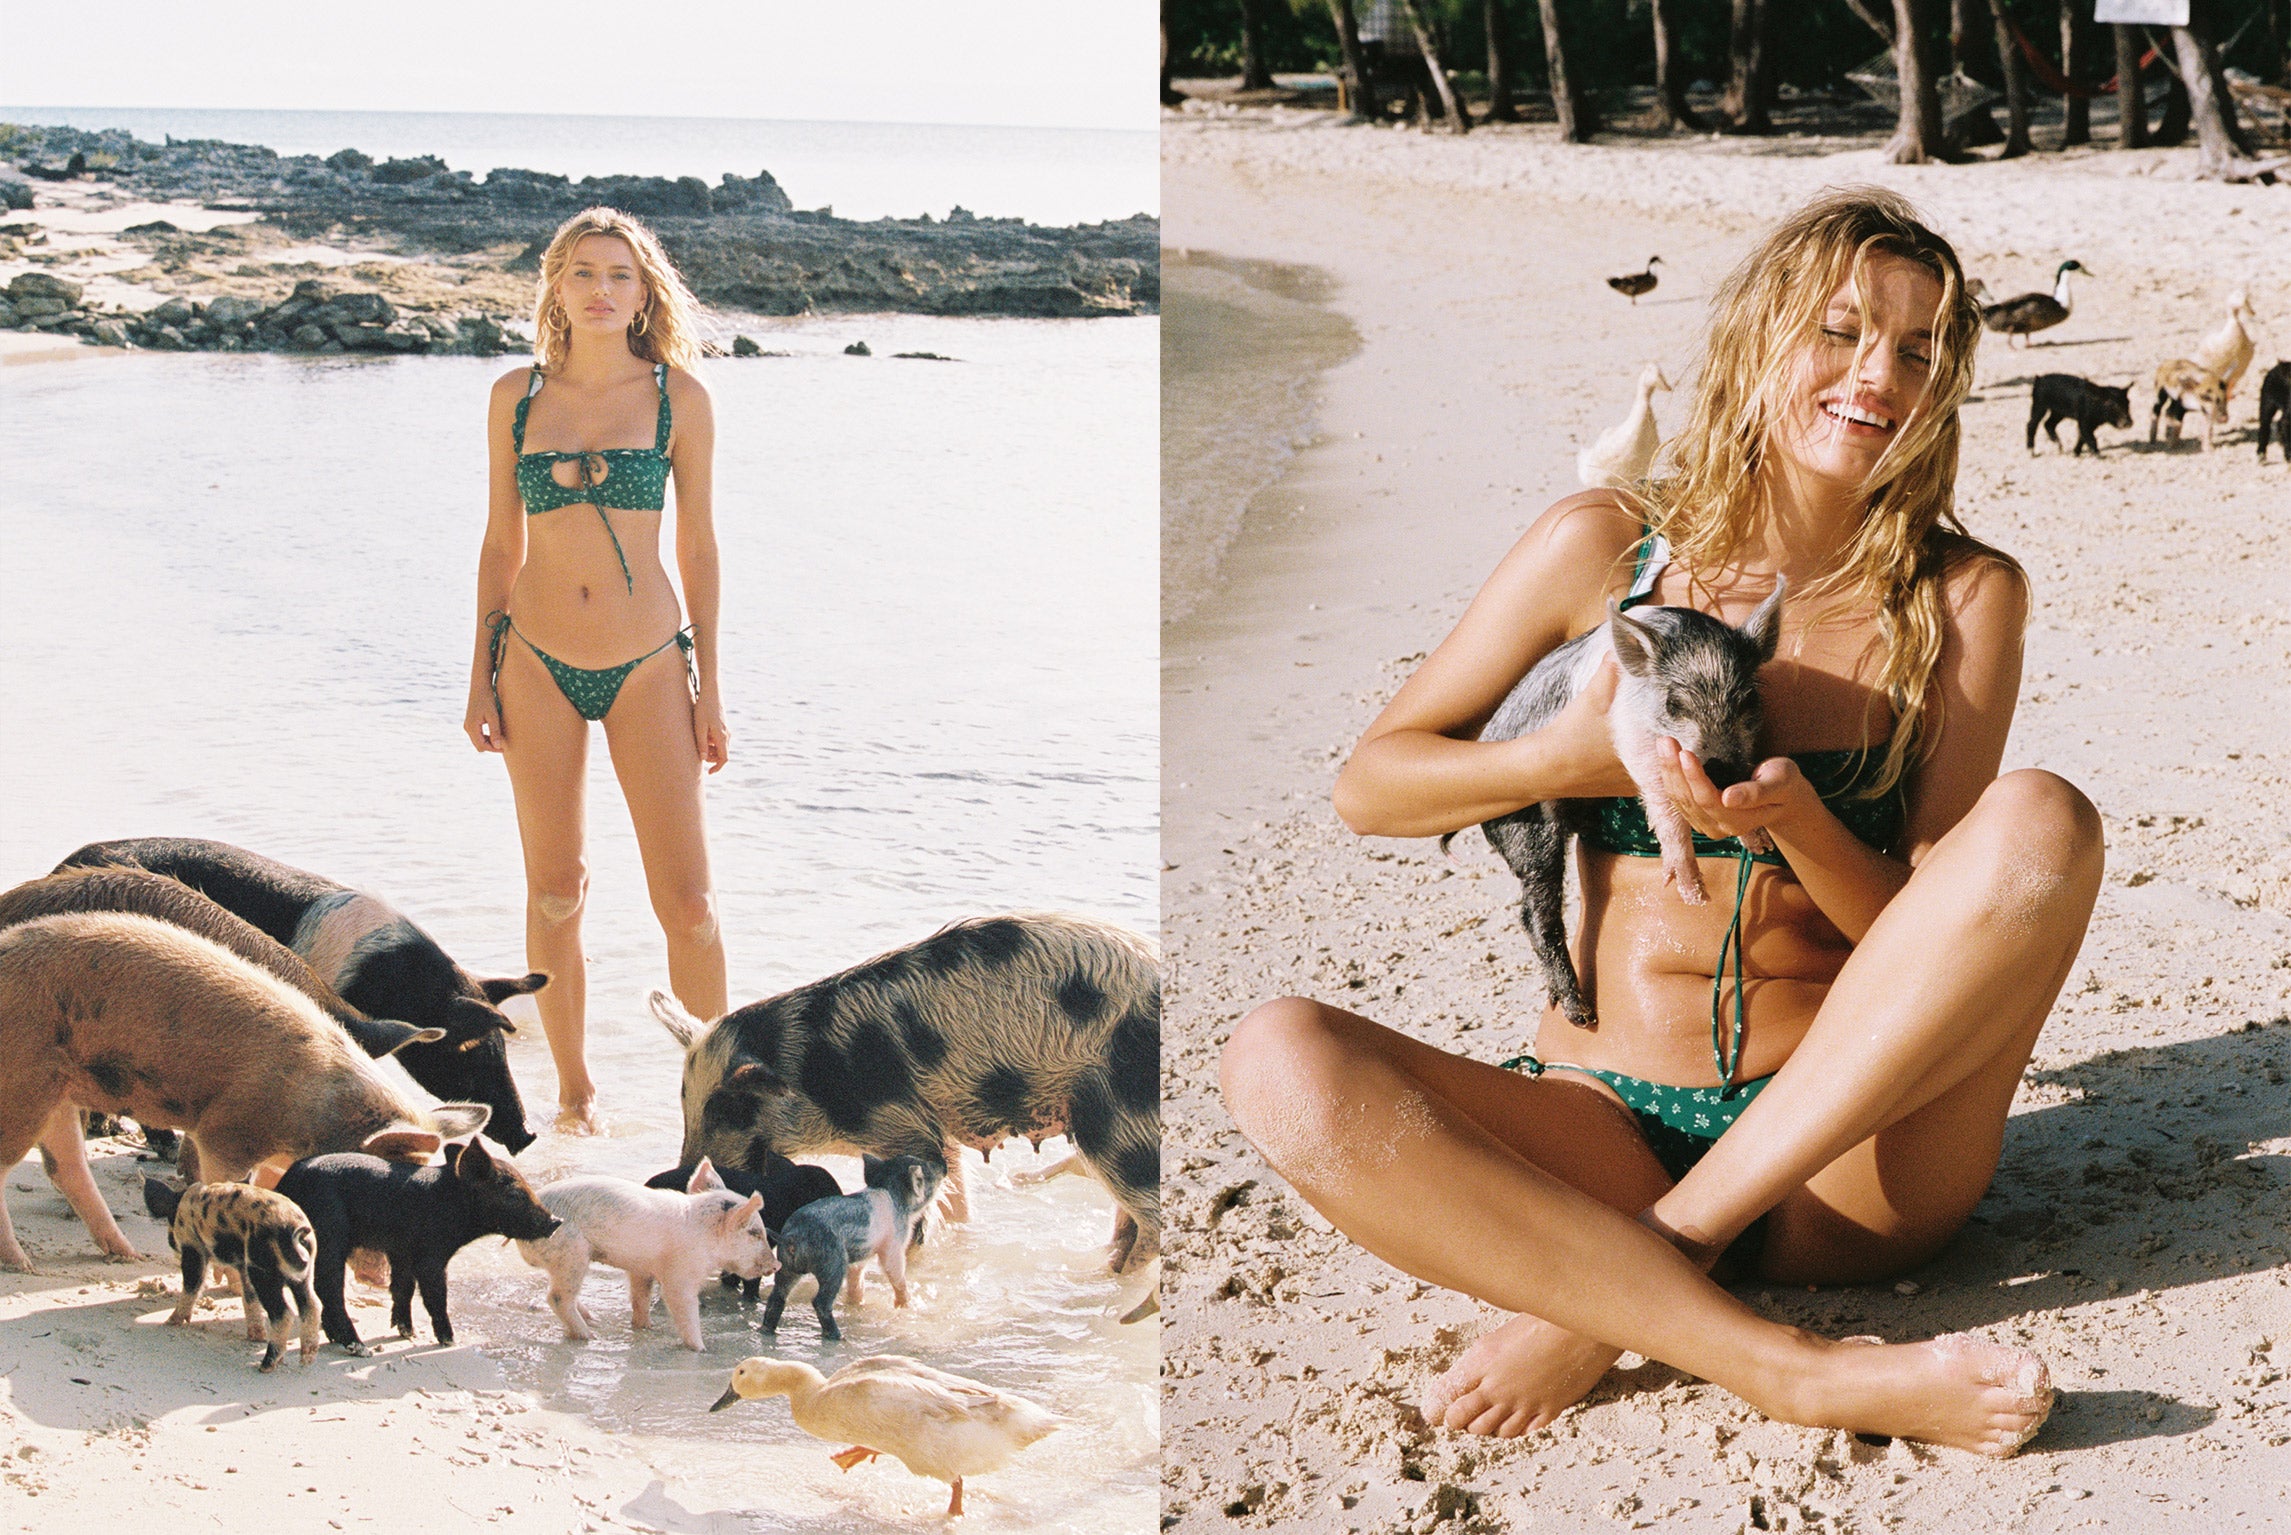 frankies bikinis pig island bahamas